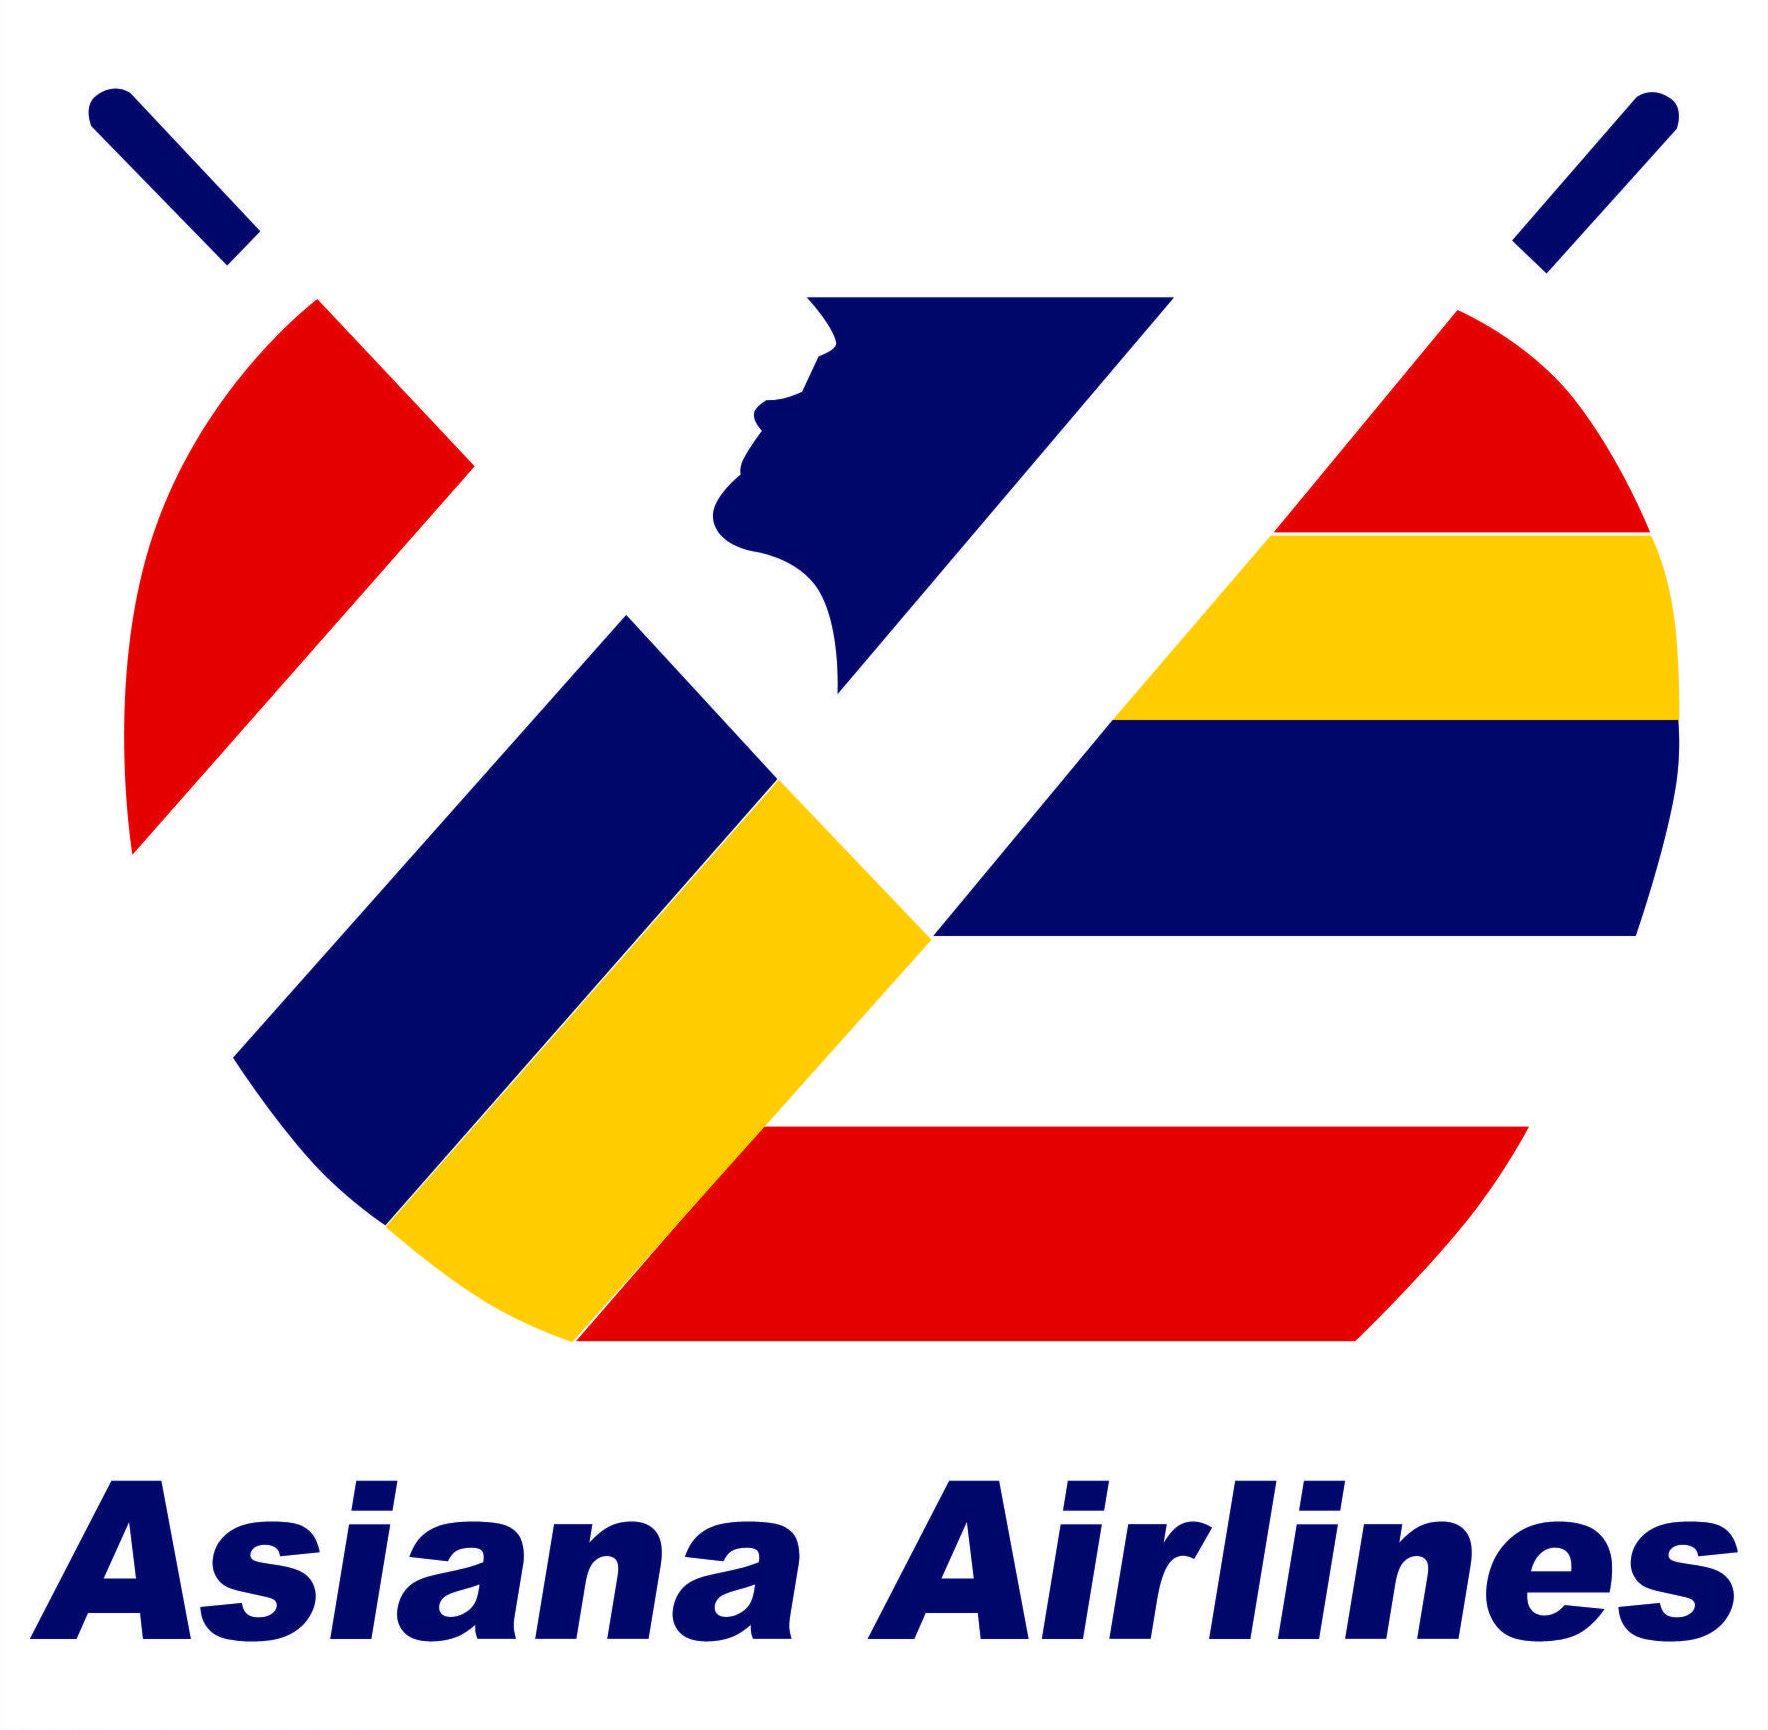 South Korea Company Logo - Asiana Airlines logos